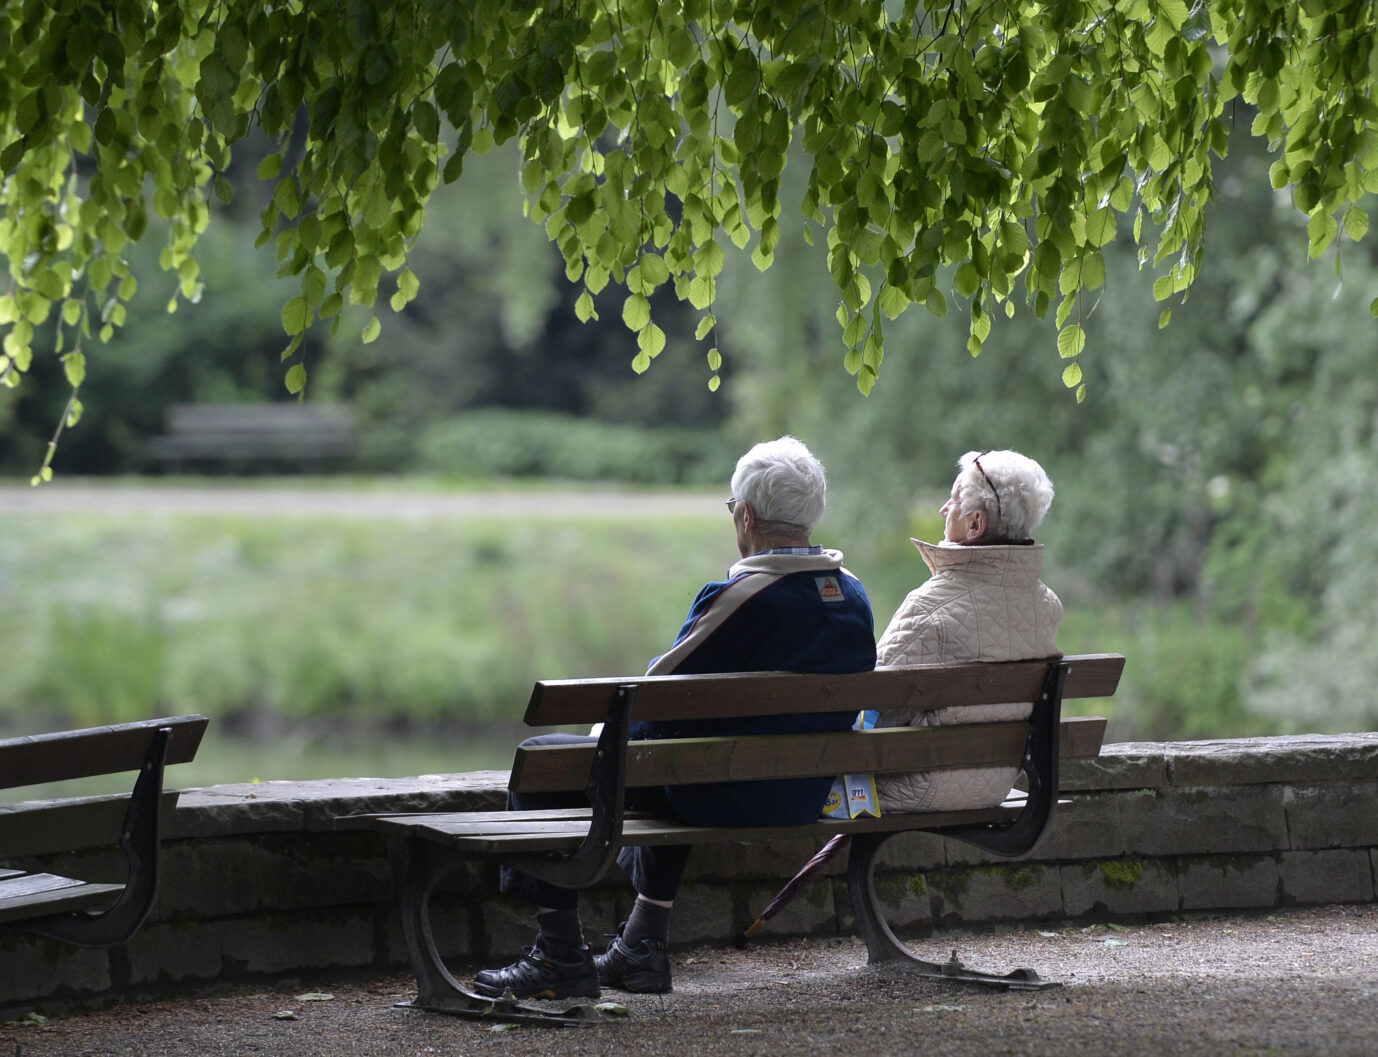 Ein älteres Paar auf einer Parkbank: Das Hin und Her bei der Standortfrage um ein Mahnmal für die Opfer der kommunistischen Gewaltherrschaft in Deutschland ist den Geschädigten unwürdig